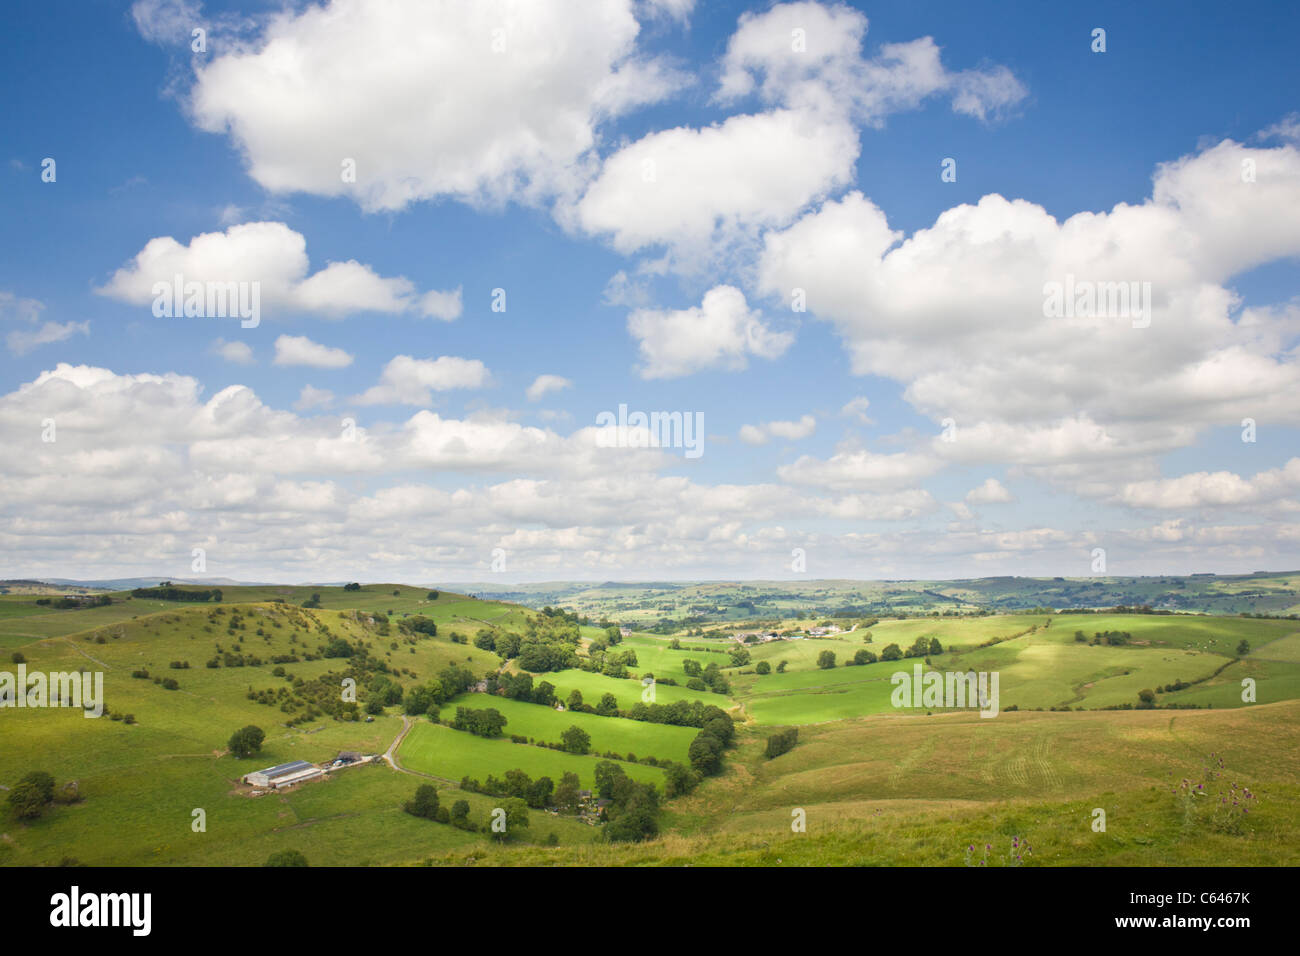 Vue en direction nord depuis le haut de la colline, près de Milldale Wetton, dans le sud de la région du Peak District, England, UK. Banque D'Images